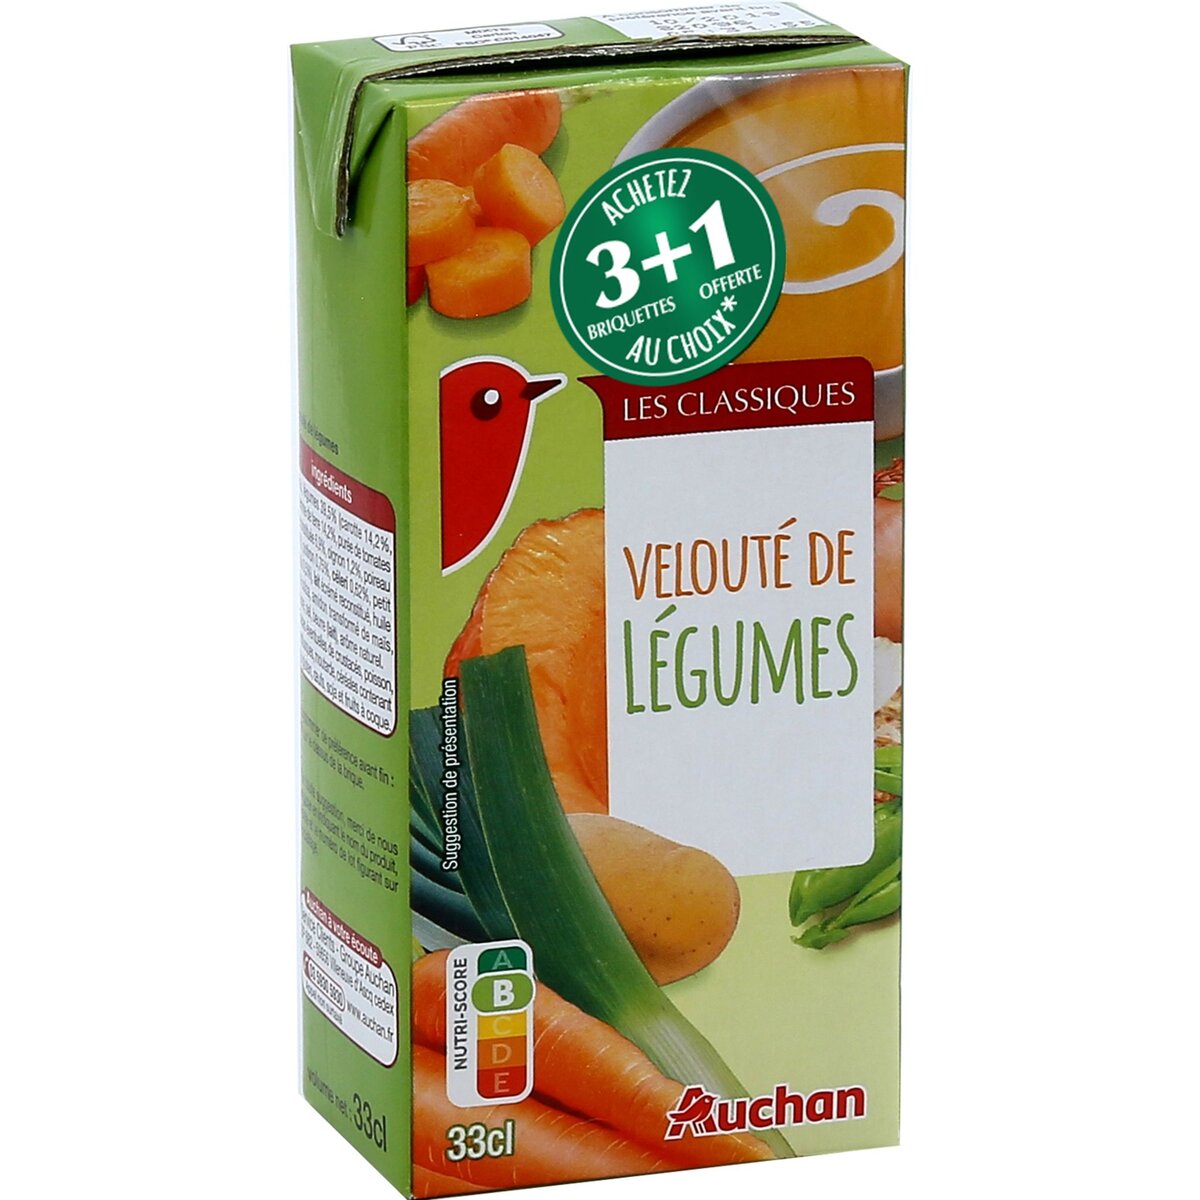 AUCHAN Velouté de légumes 1 personne 33cl